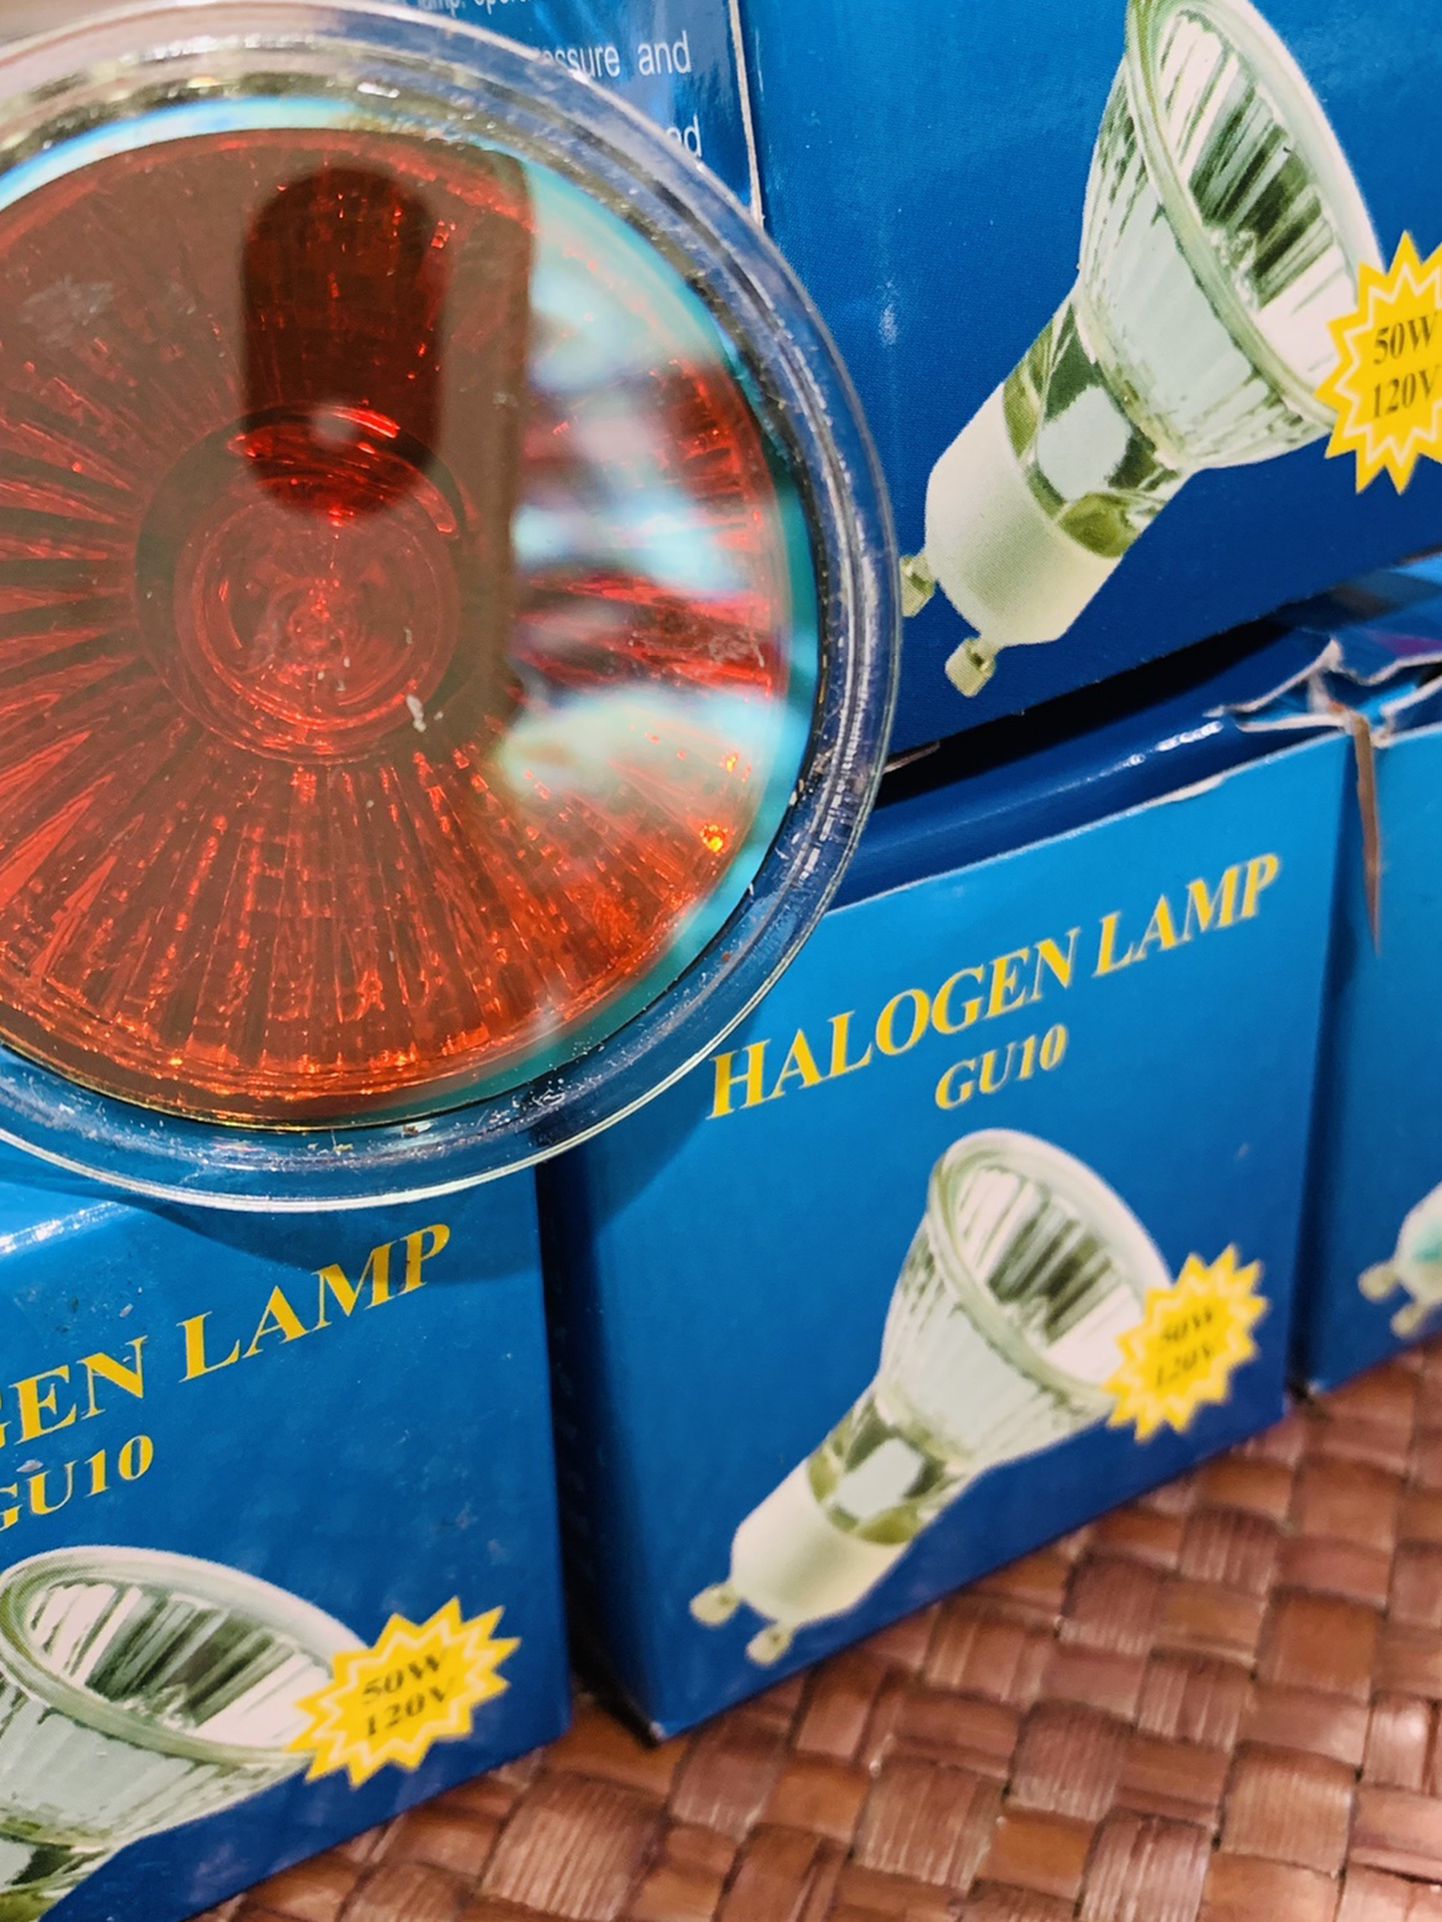 Halogen Lamp GU10 50 W , 5 Count